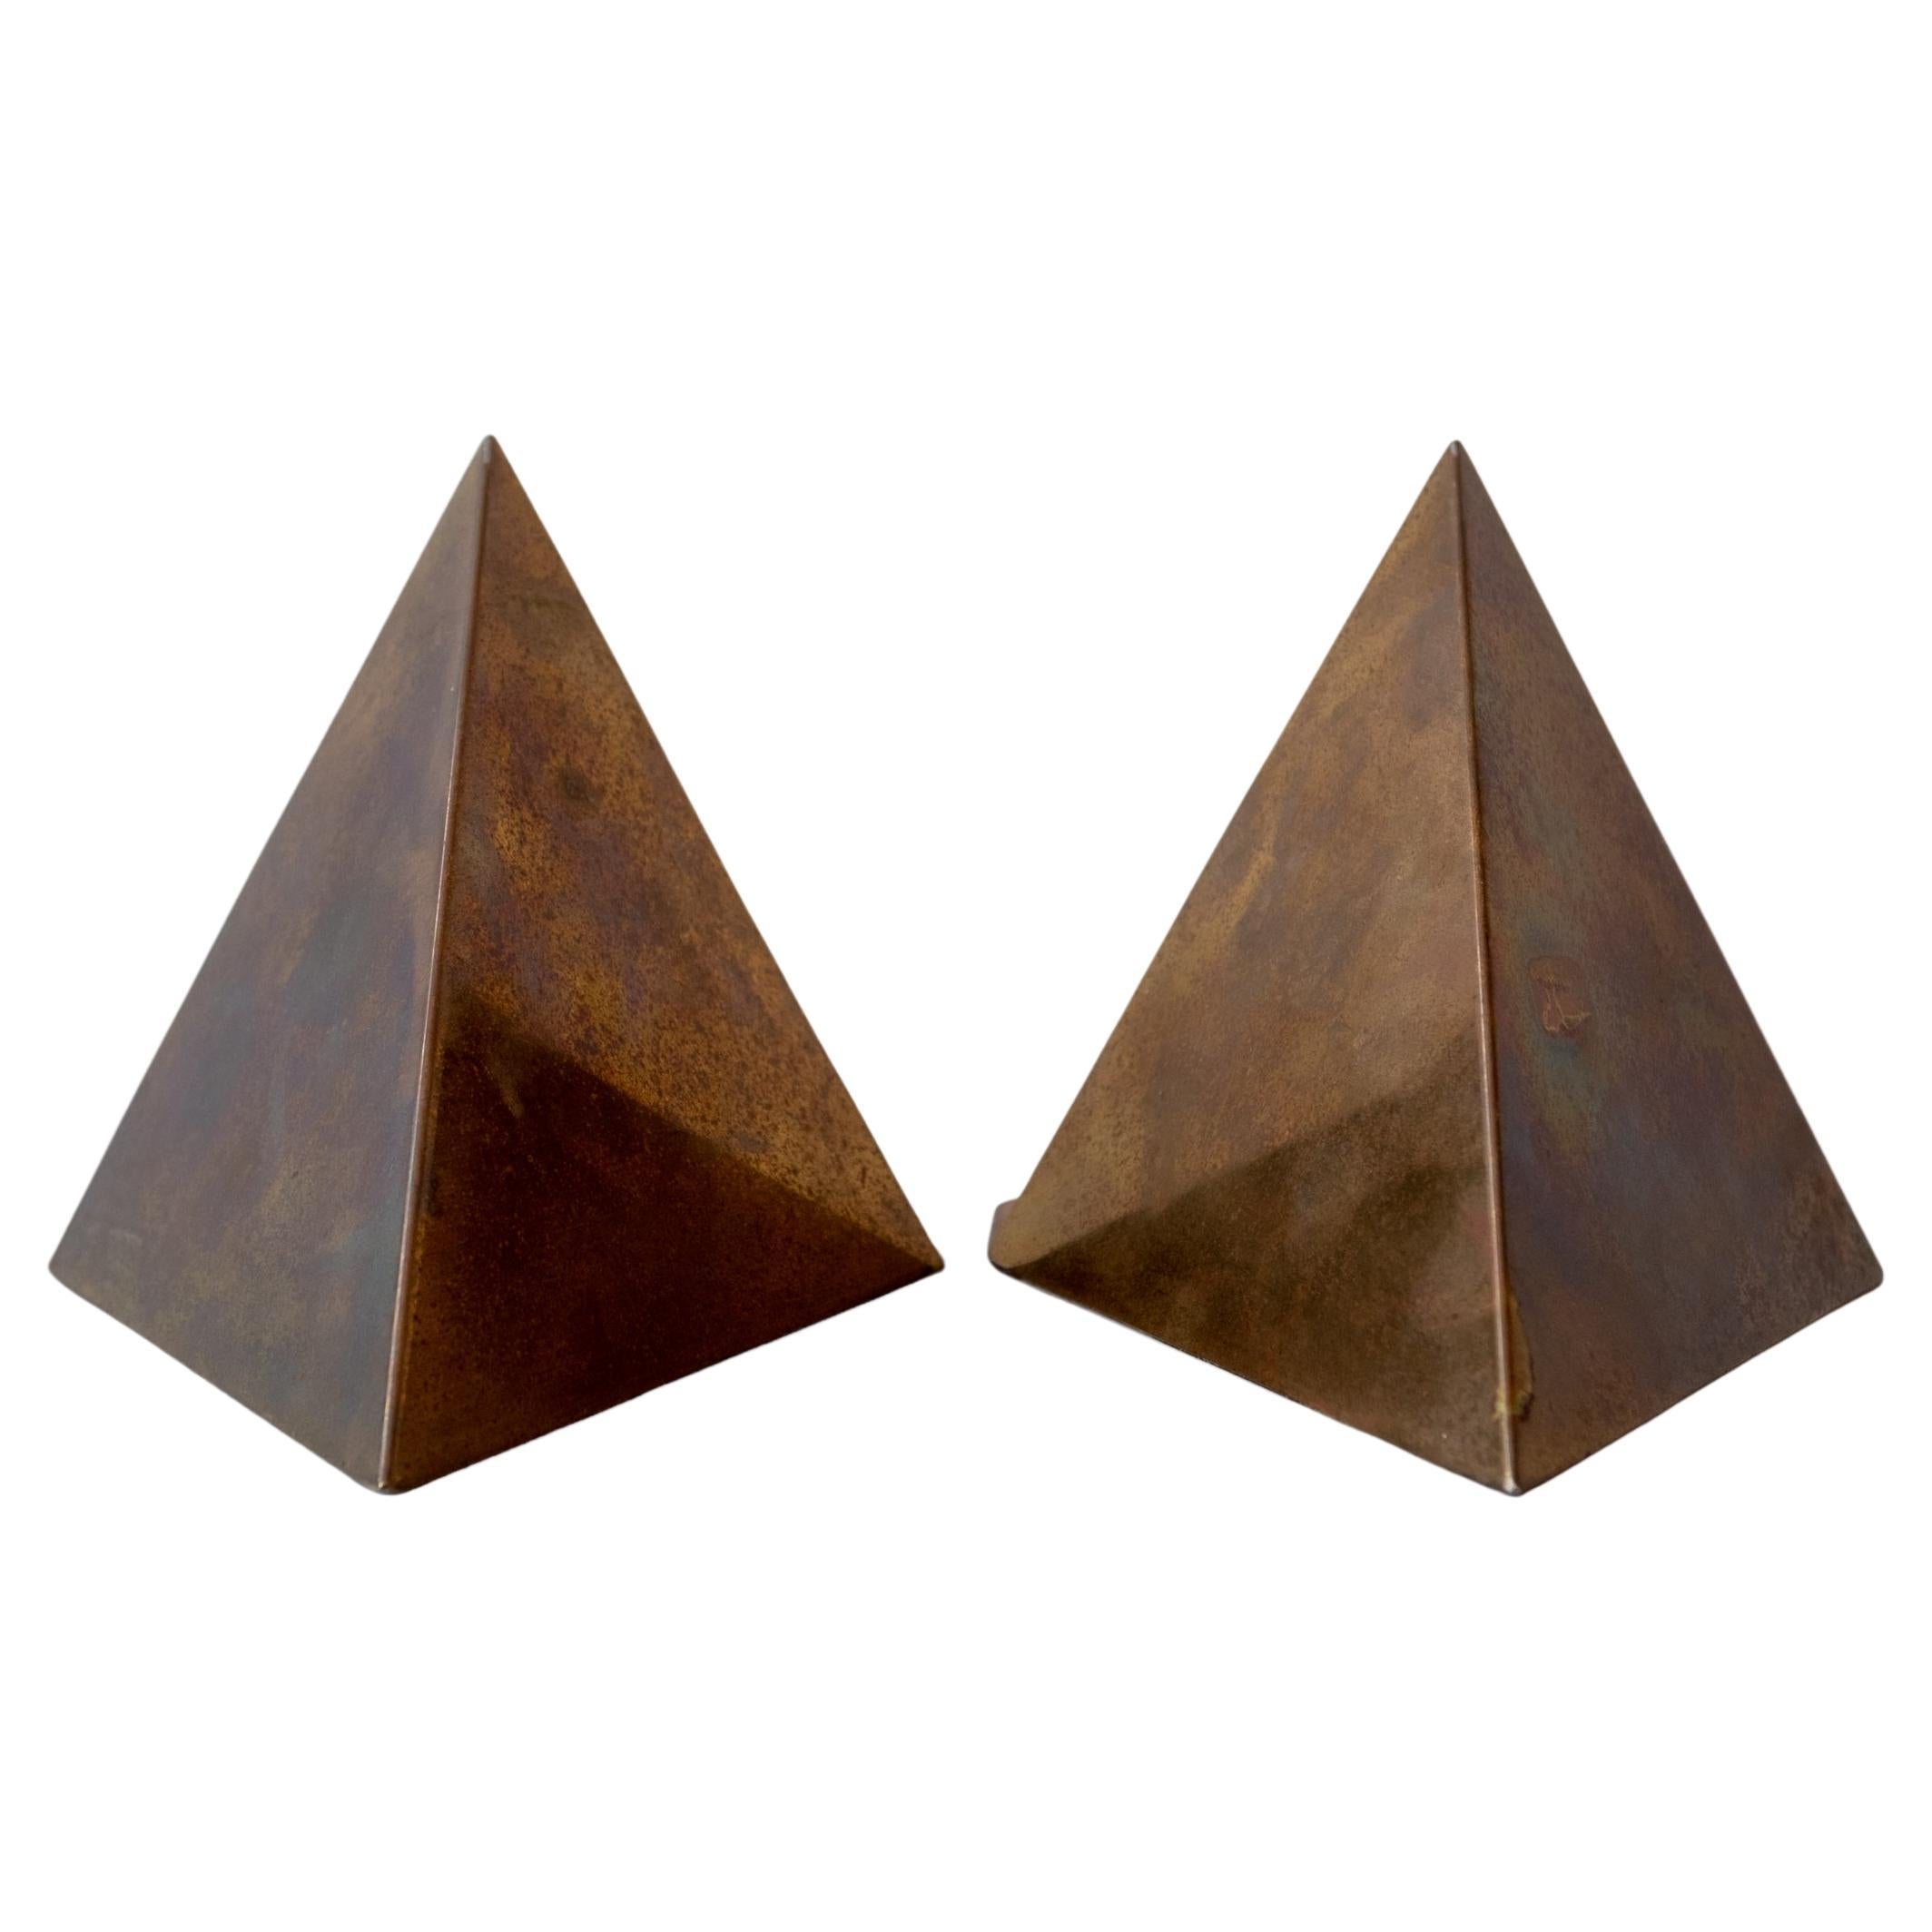 1970s, Triangular Brass Bookends